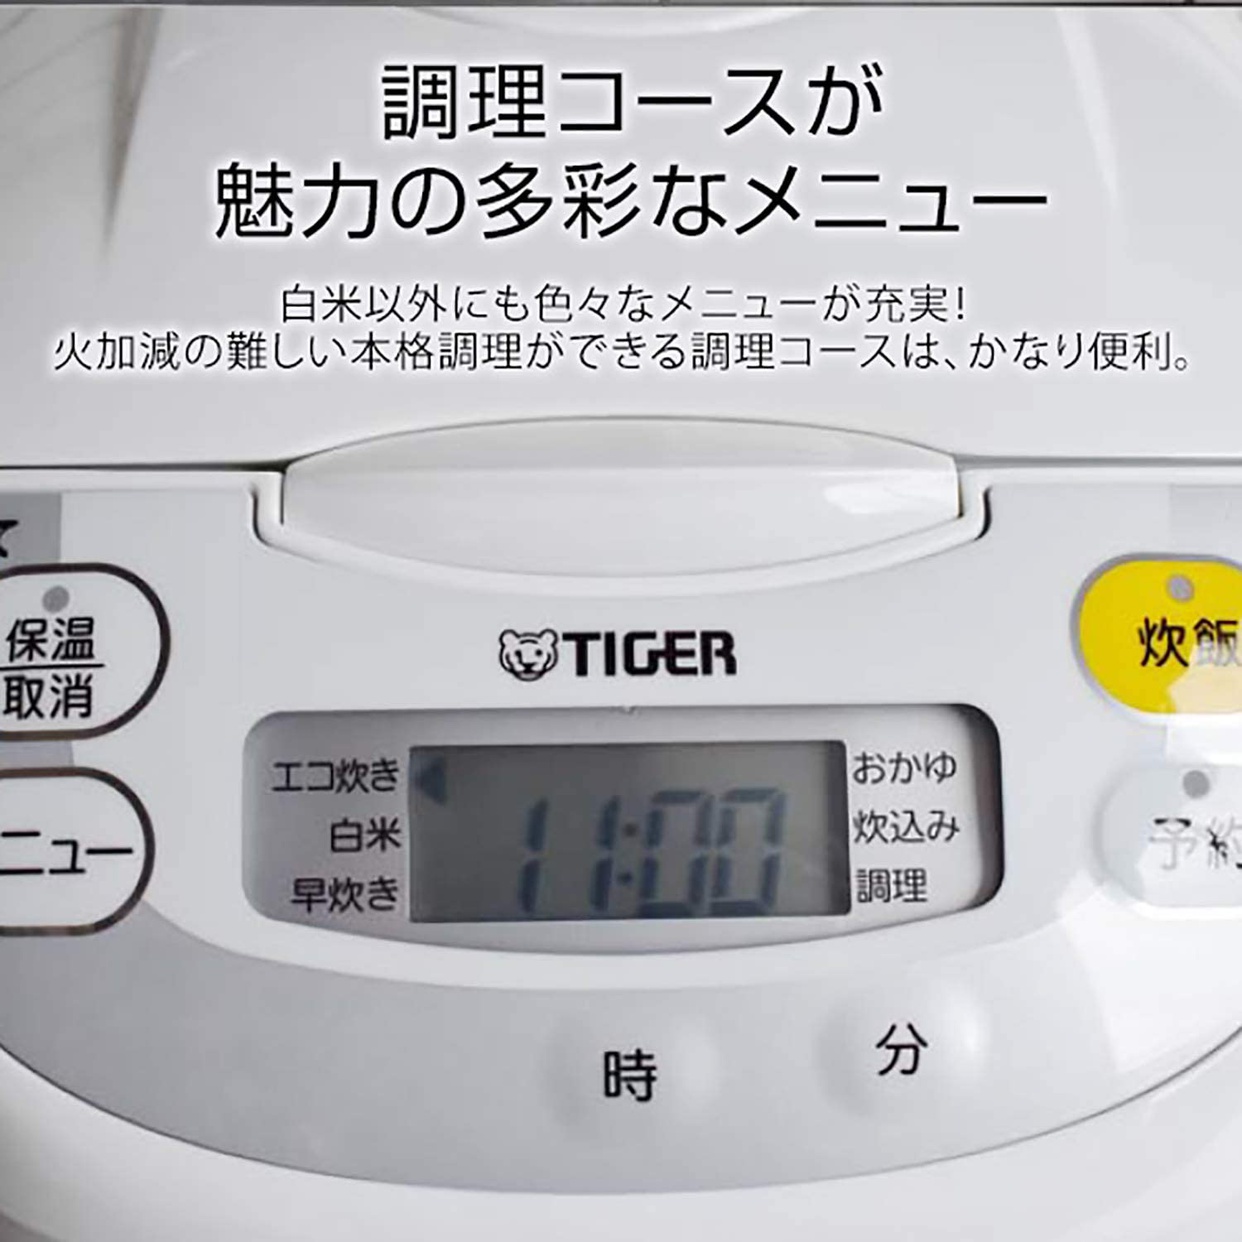 タイガー魔法瓶(TIGER) マイコンジャー炊飯器 炊きたて JBH-G101の商品画像サムネ3 